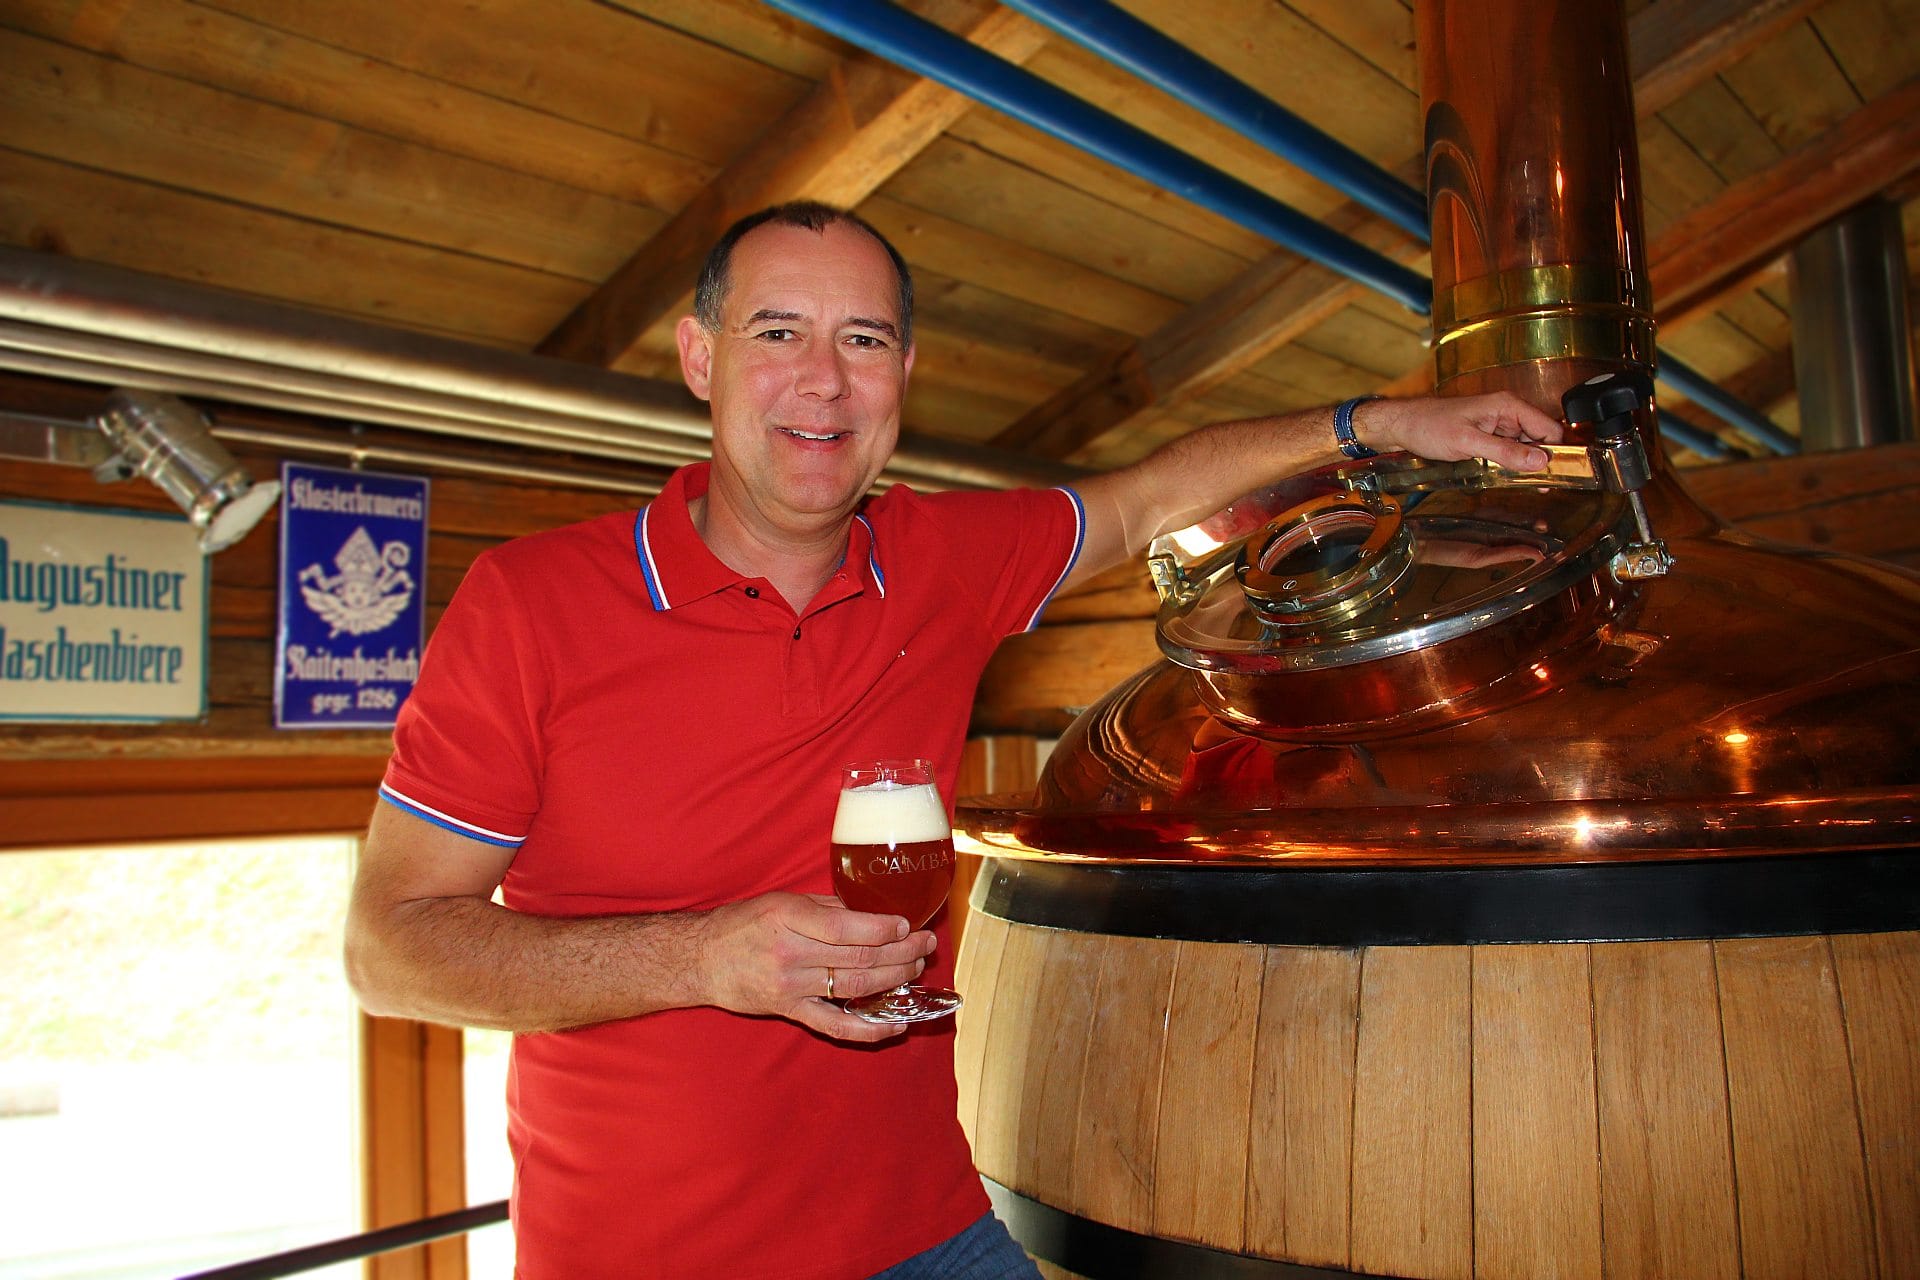 Der Braumeister Götz Steinl von der bayerischen Craft-Beer-Brauerei Camba Bavaria weiss, wie gutes Bier schmeckt. Deswegen produziert er auch ein traditionelles Pils, das wieder nach Hopfen riecht und schmeckt.